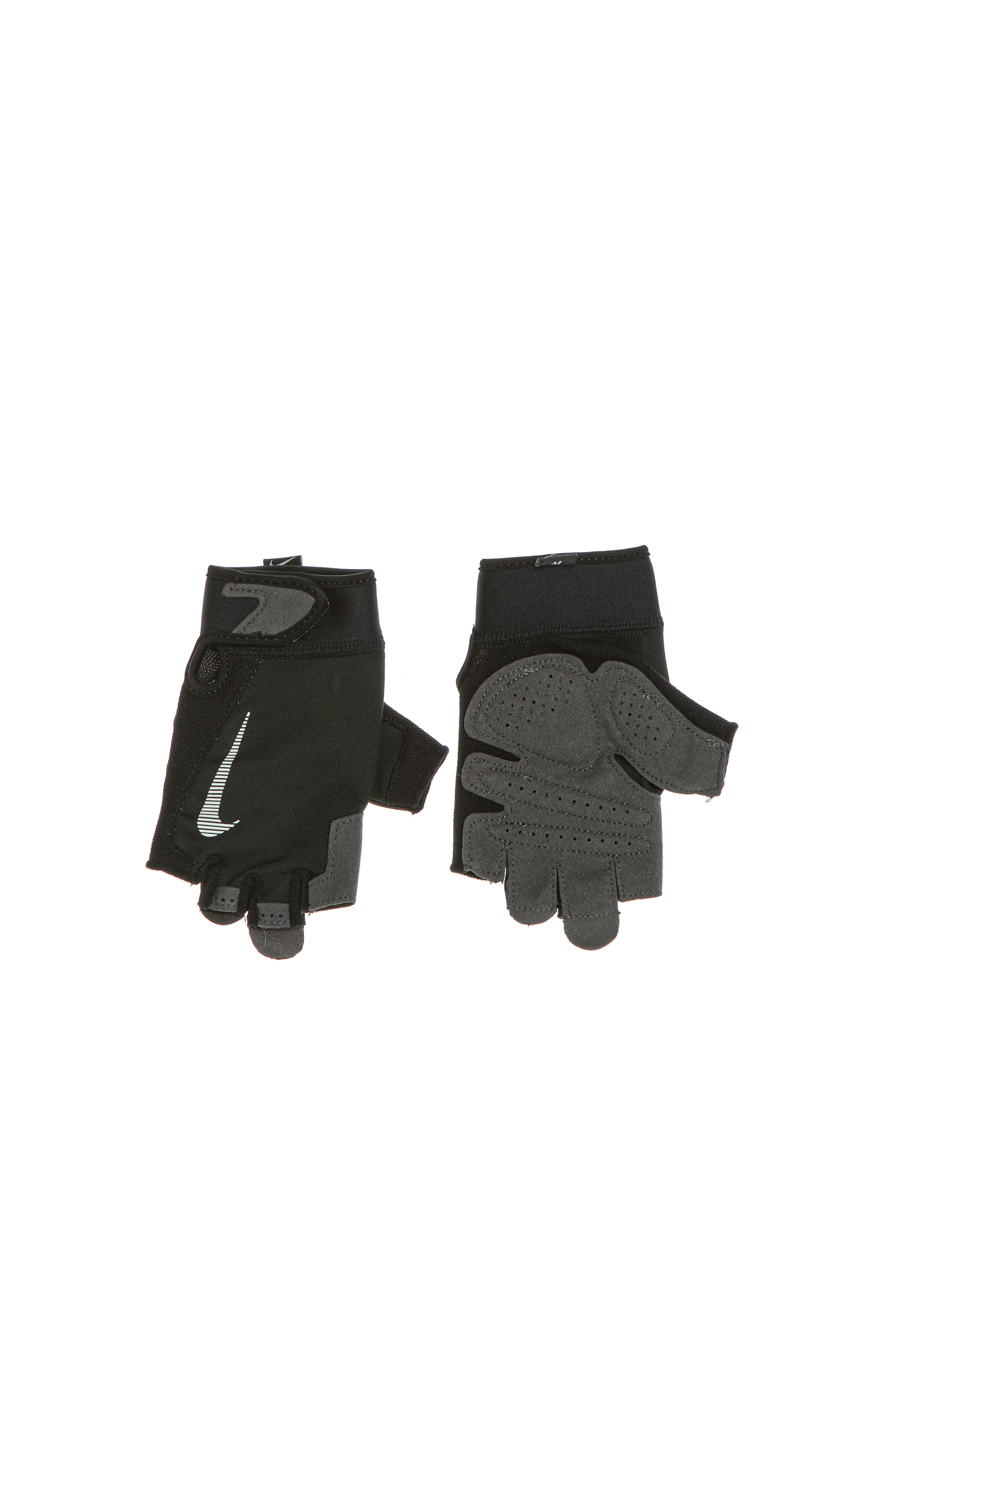 Ανδρικά/Αξεσουάρ/Αθλητικά Είδη/Εξοπλισμός NIKE - Ανδρικά γάντια προπόνησης NIKE N.LG.C2.XL NIKE MEN'S ULTIMATE FITNESS GL μαύρα γκρι